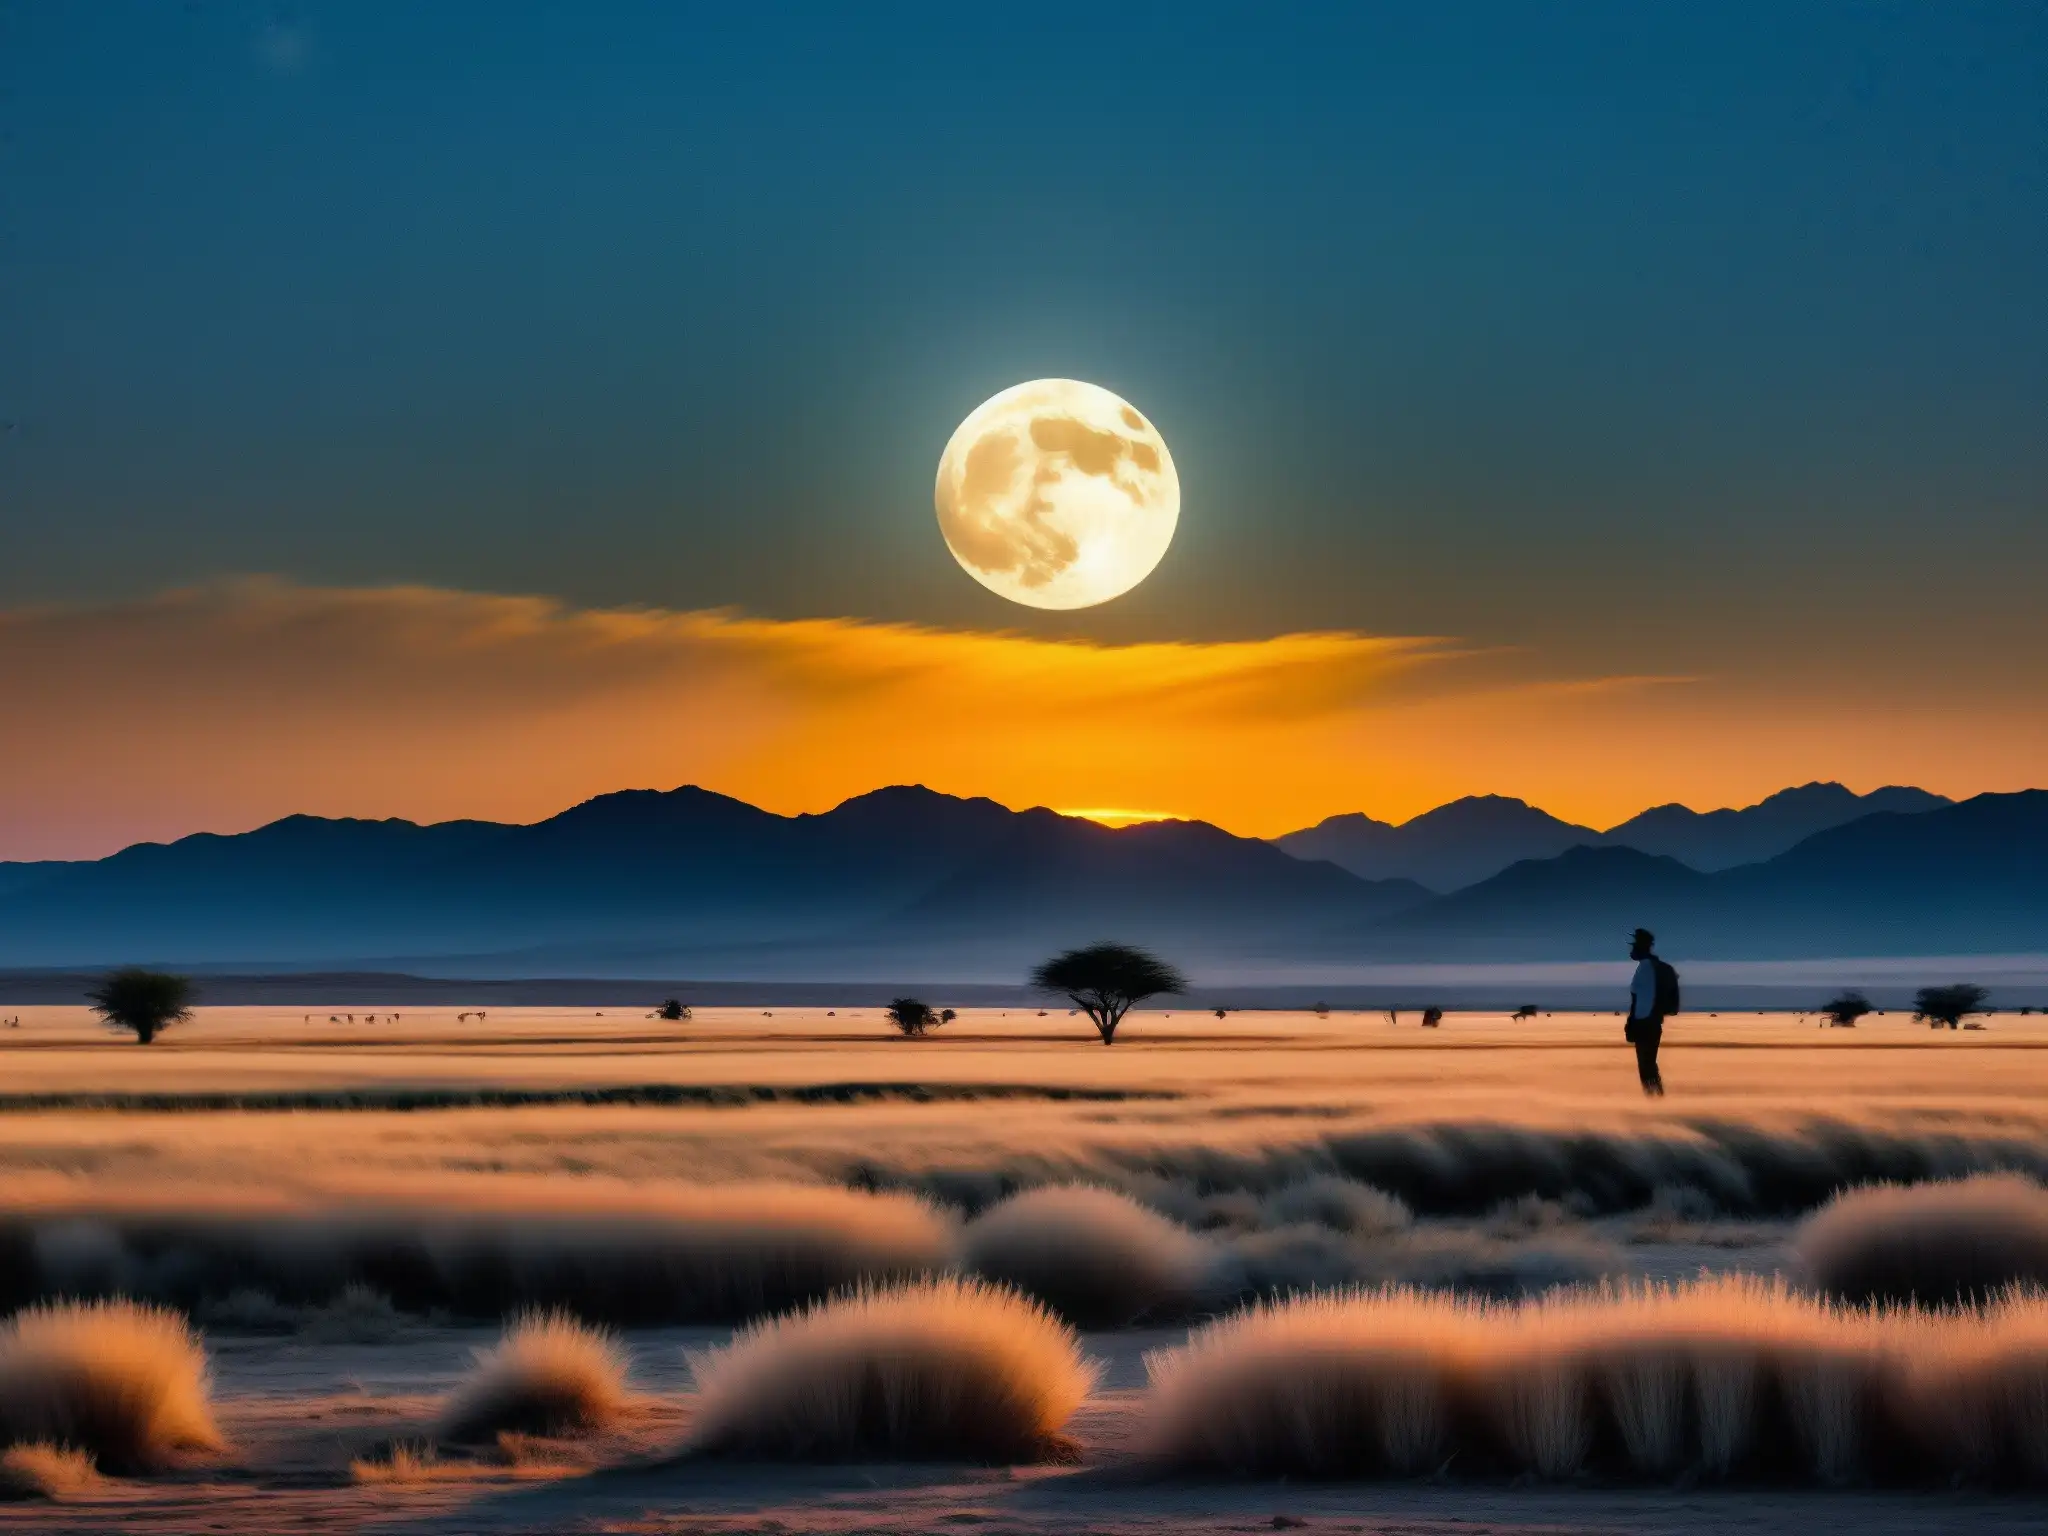 Una transformación mística: la luna llena ilumina las desoladas pampas argentinas, evocando la leyenda del Lobizón